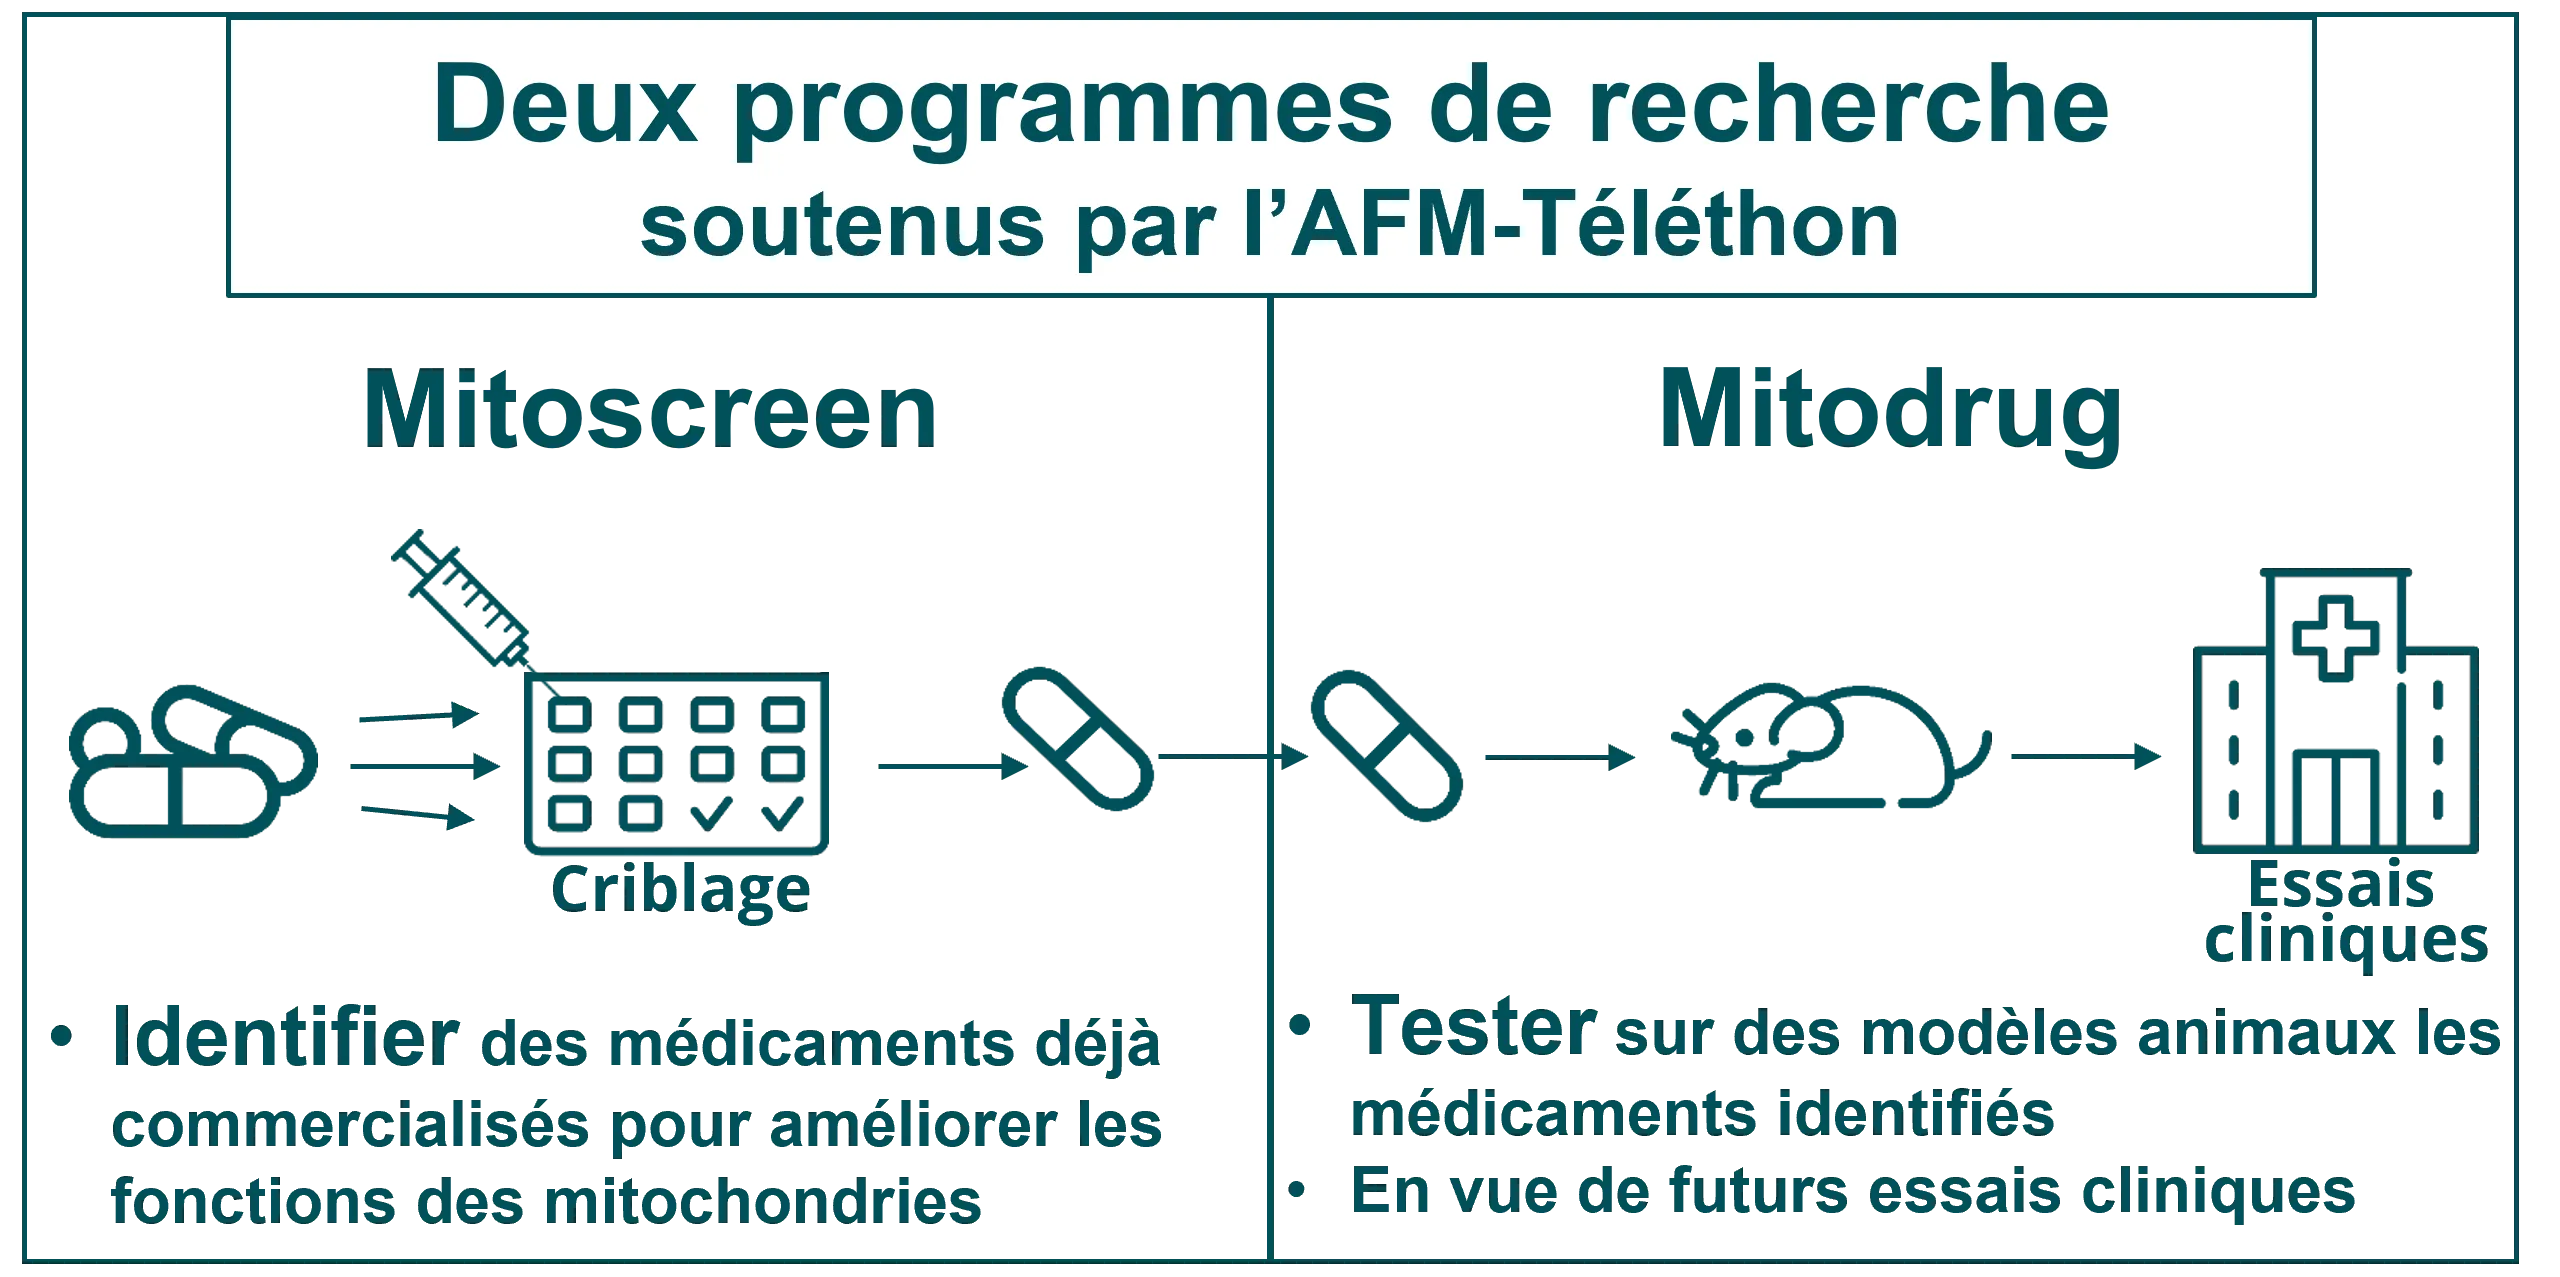 Infographie - Deux programmes de recherche soutenus par l'AFM-Téléthon